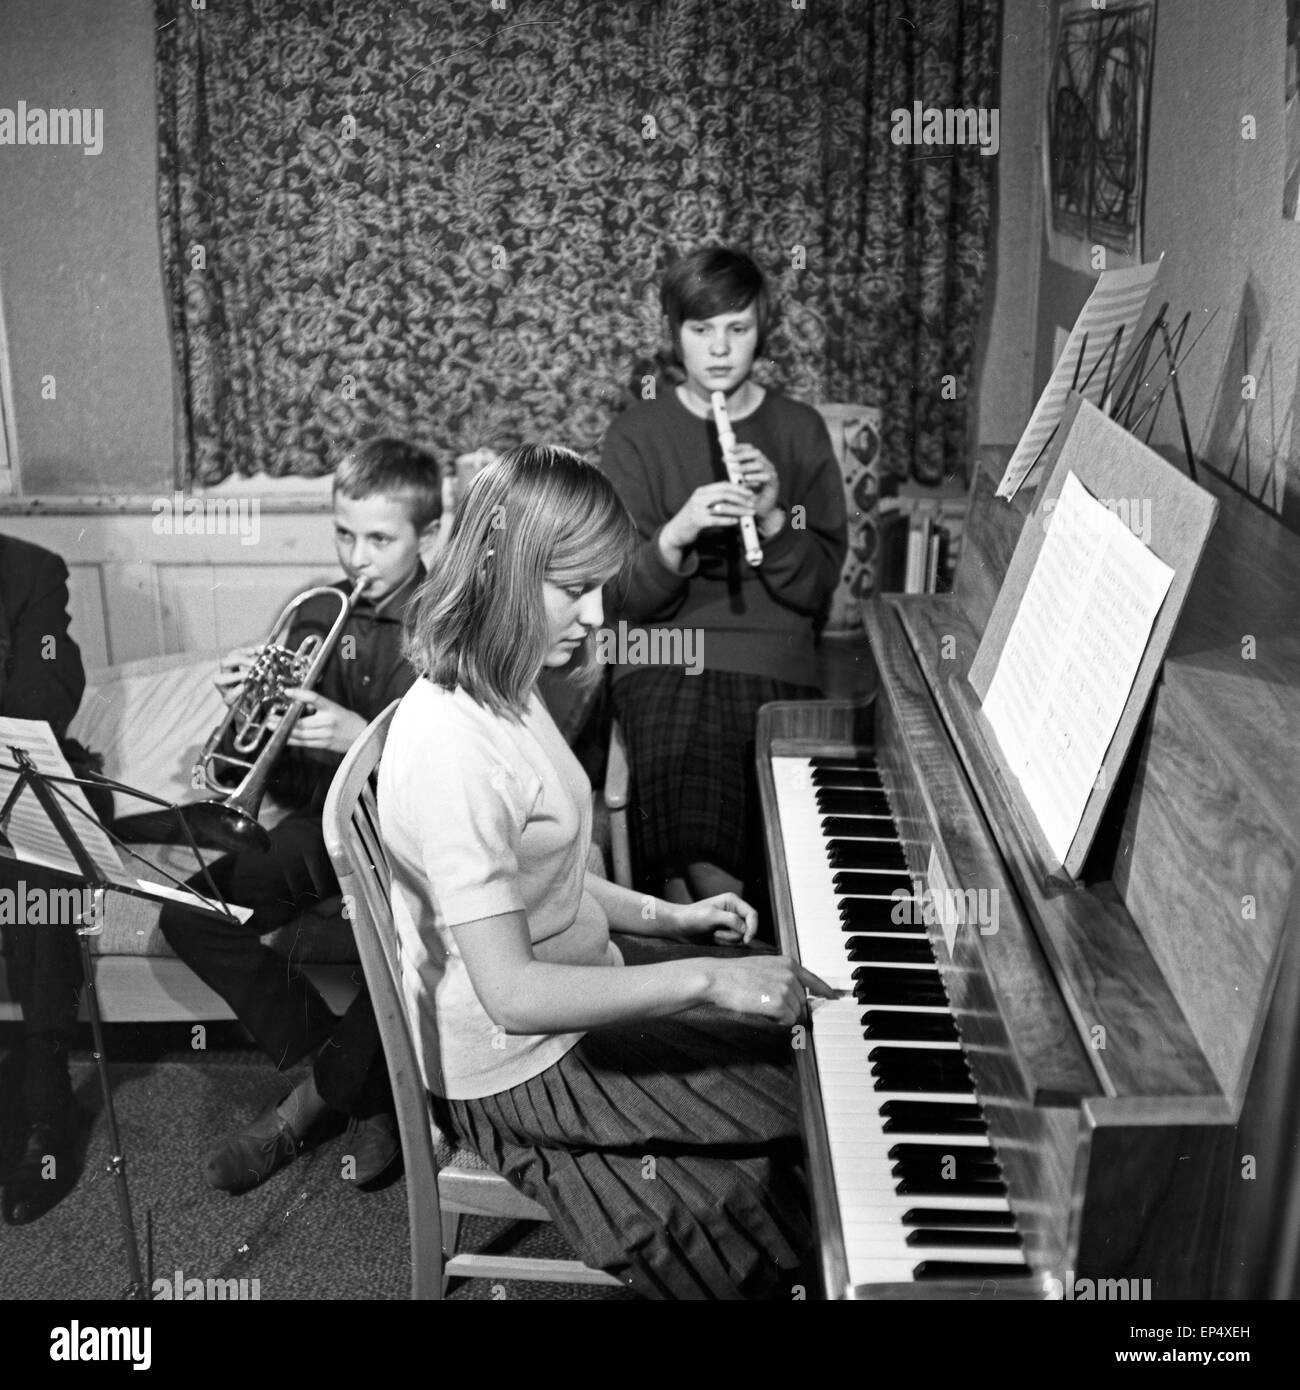 Ein Abend für junge Leute, Fernsehproduktion, Deutschland 1962, Sendung zur politischen Meinungsbildung mit Hausmusik Stock Photo